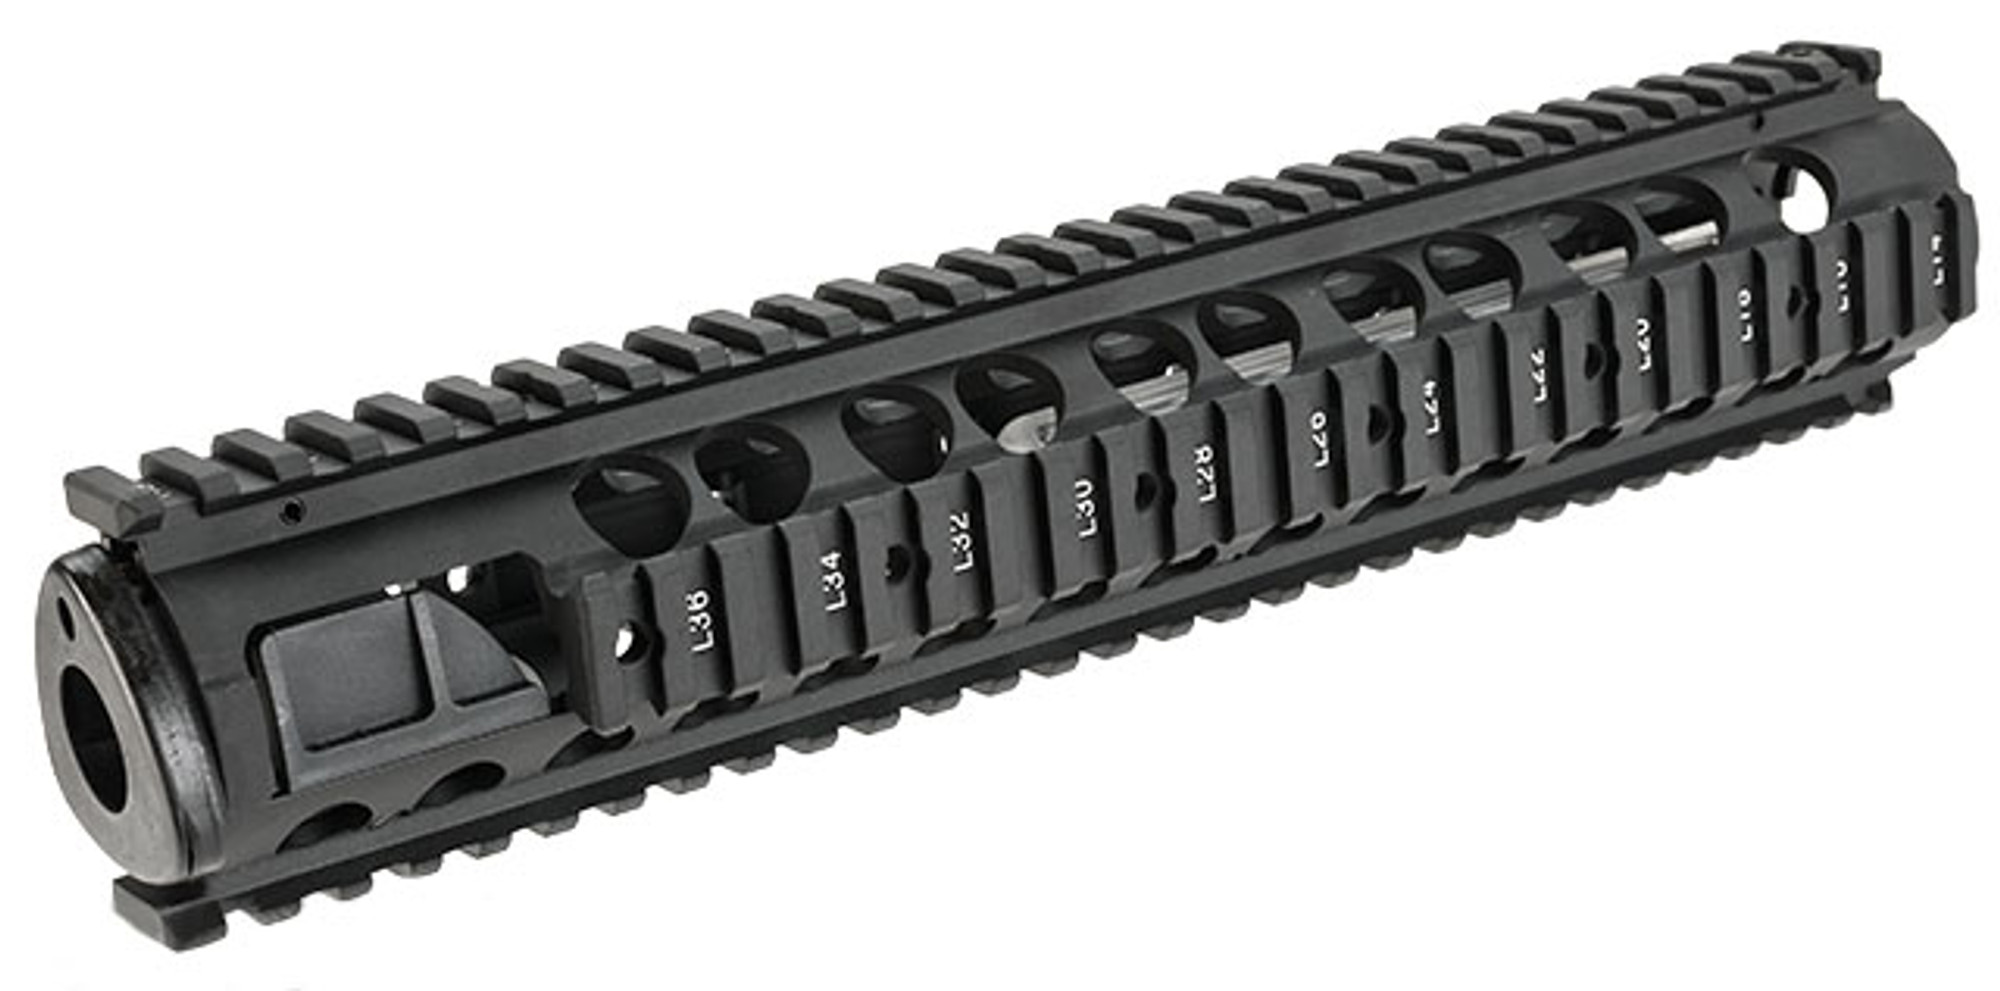 G&P M5 RAS 12" Rail System for M4 / M16 Series Airsoft AEG Rifles - Black